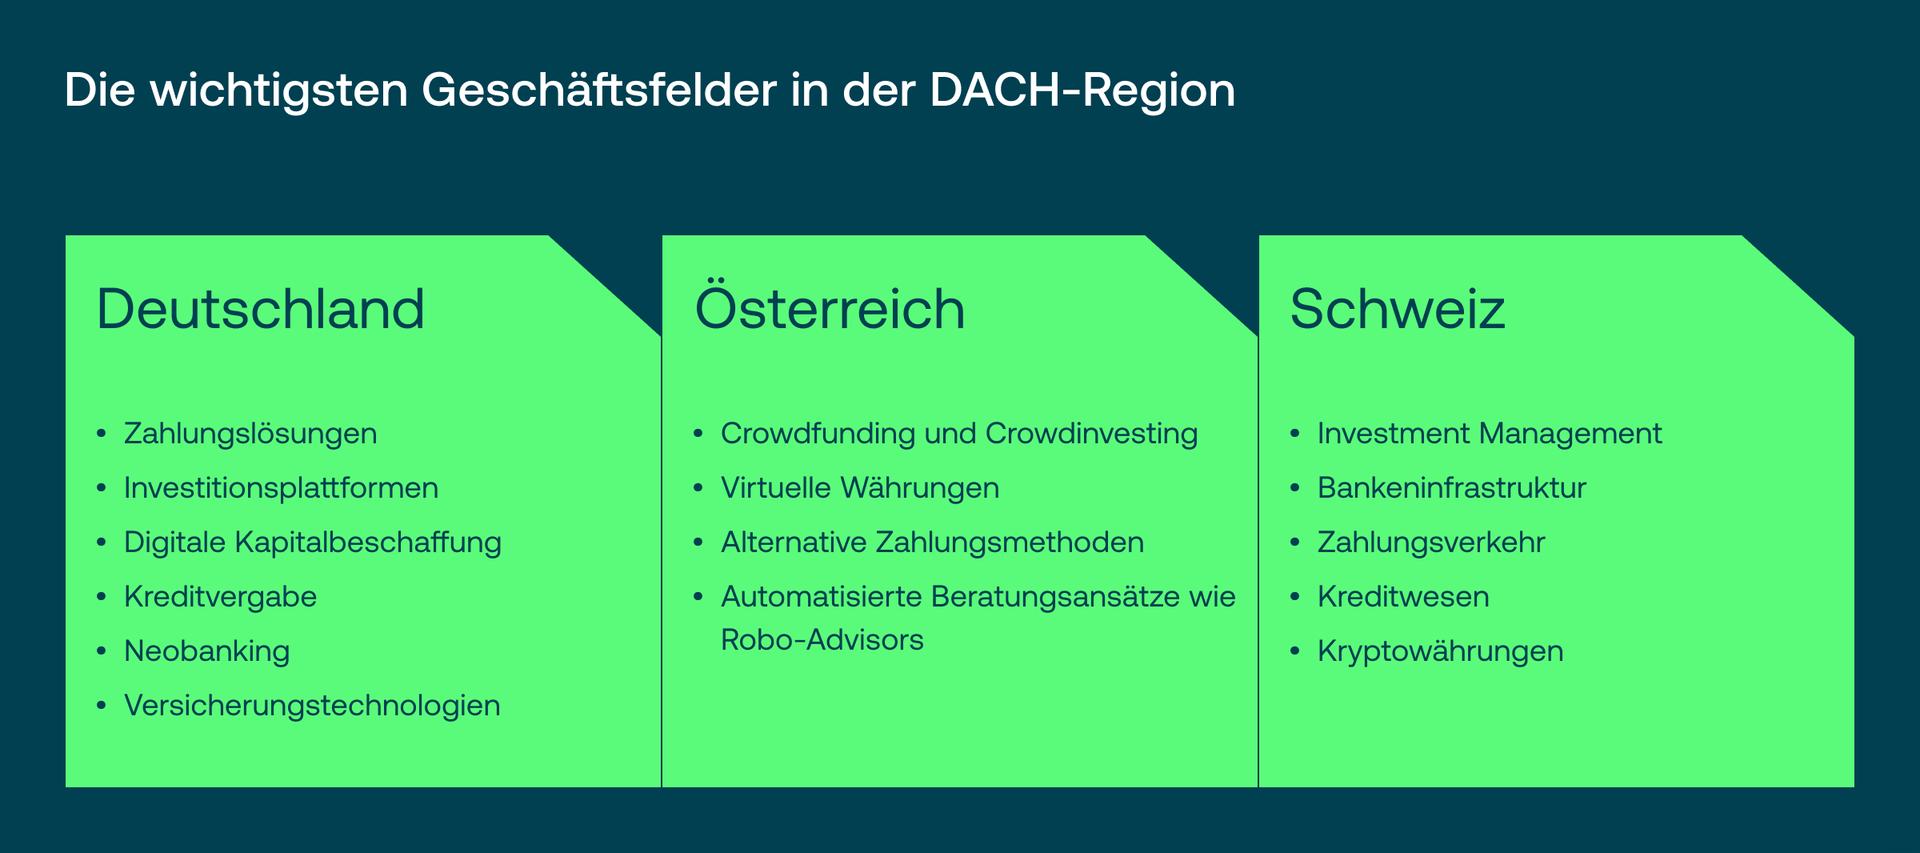 FinTech in der DACH-Region - Entwicklung, Akteure, Ausblick_05